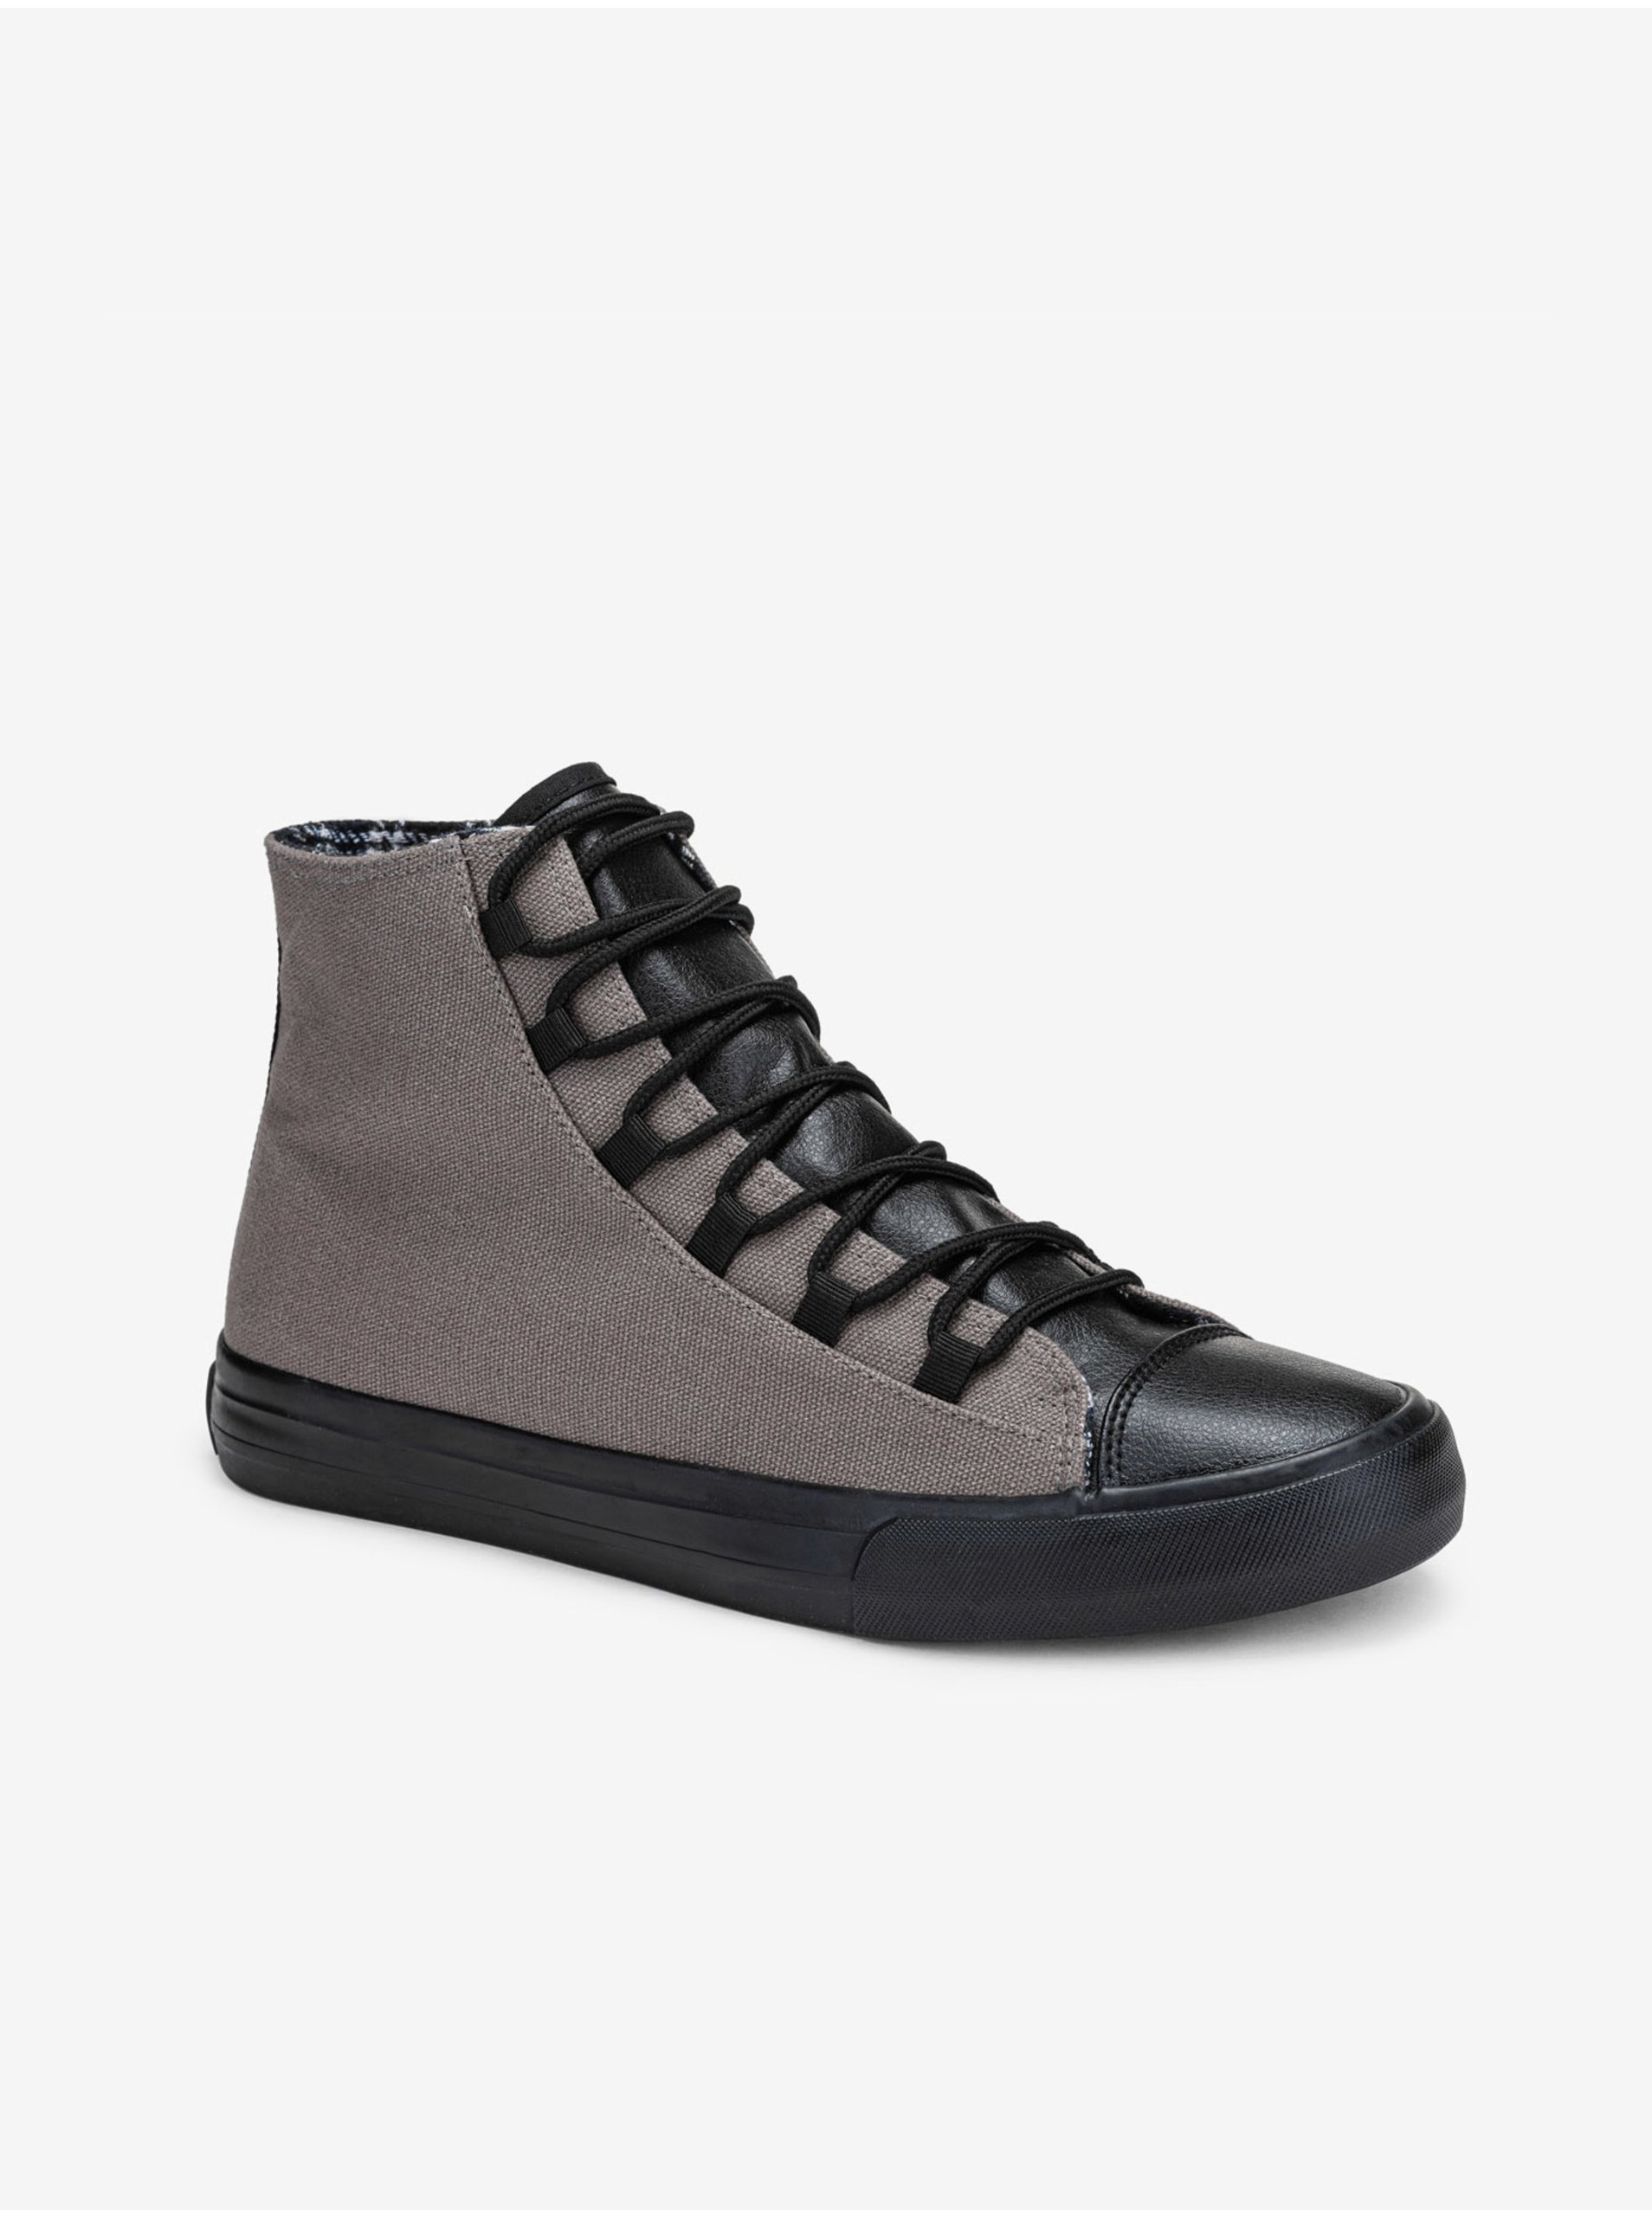 E-shop Čierno-šedé pánske sneakers topánky Ombre Clothing T378